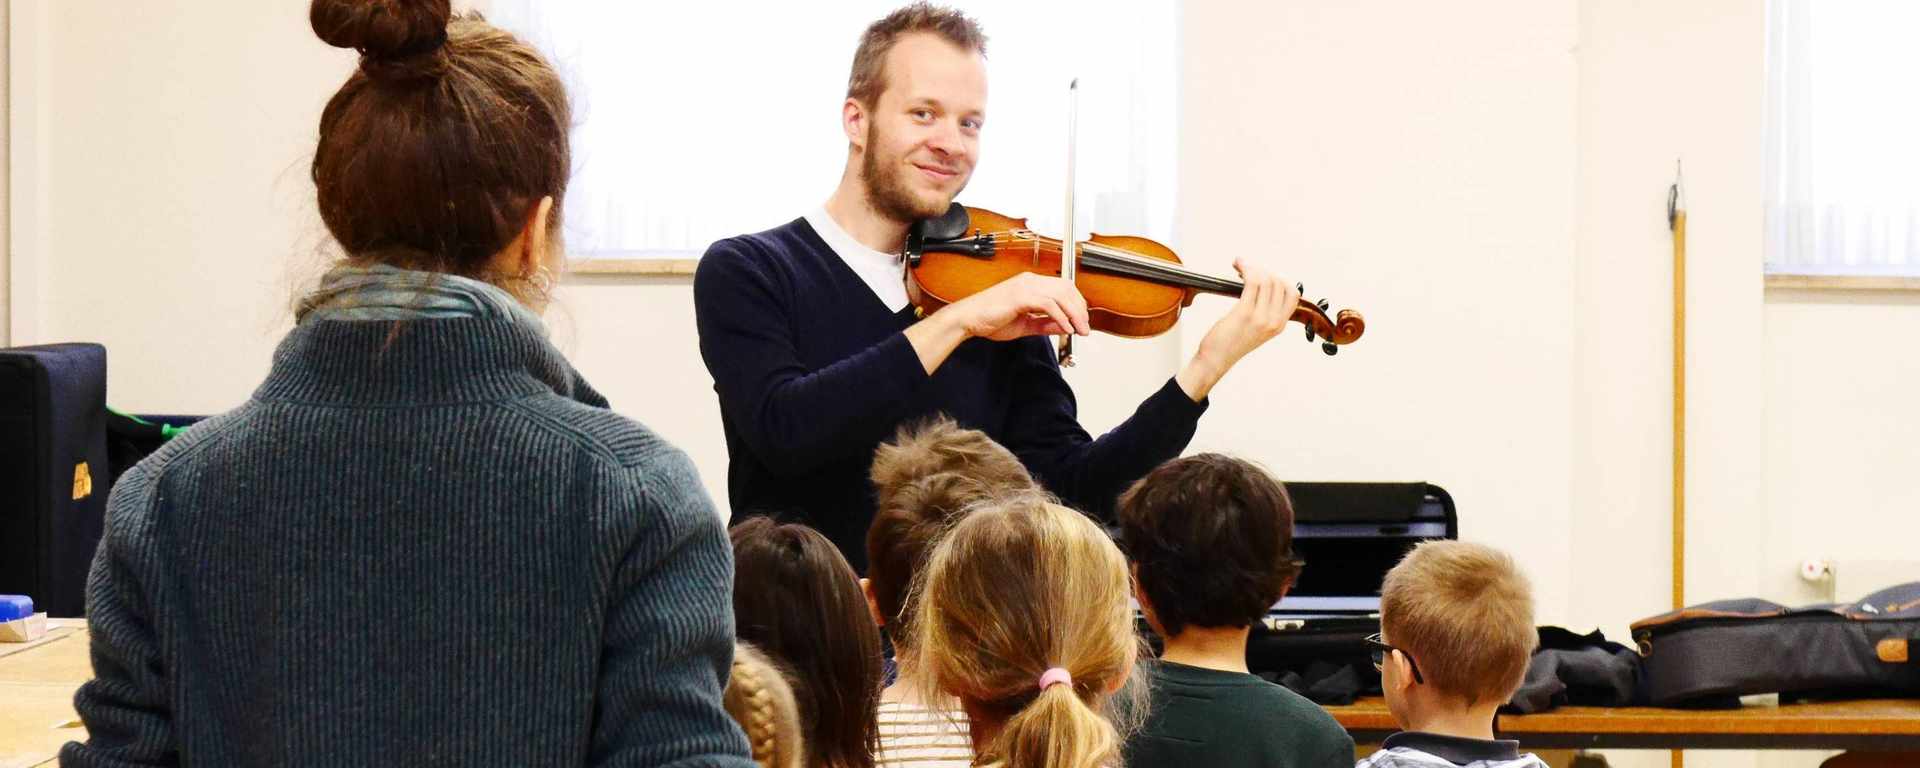 Geigenunterricht für Kinder, Jugendliche, Studierende - in Basel oder Online